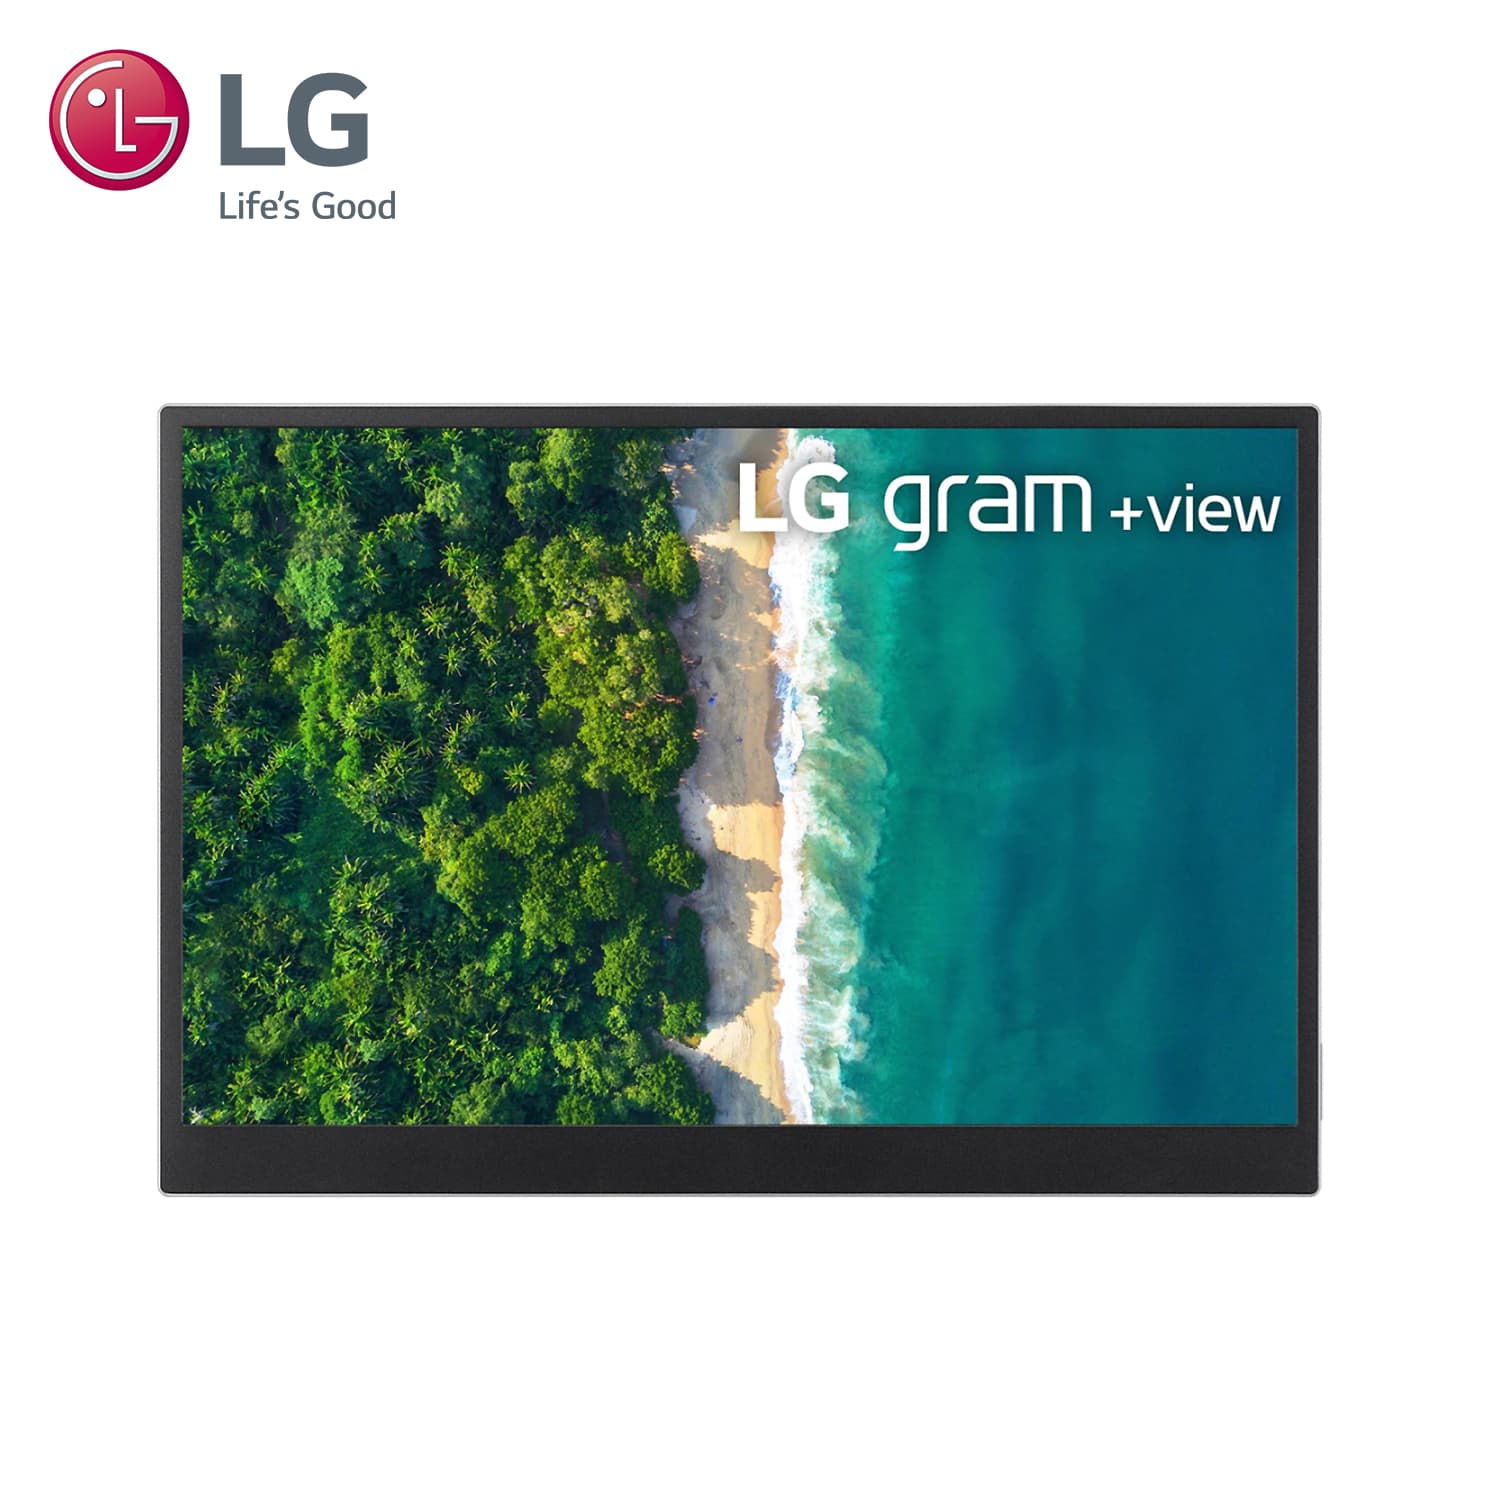 (福利品) LG gram +view 可攜式螢幕 (銀)